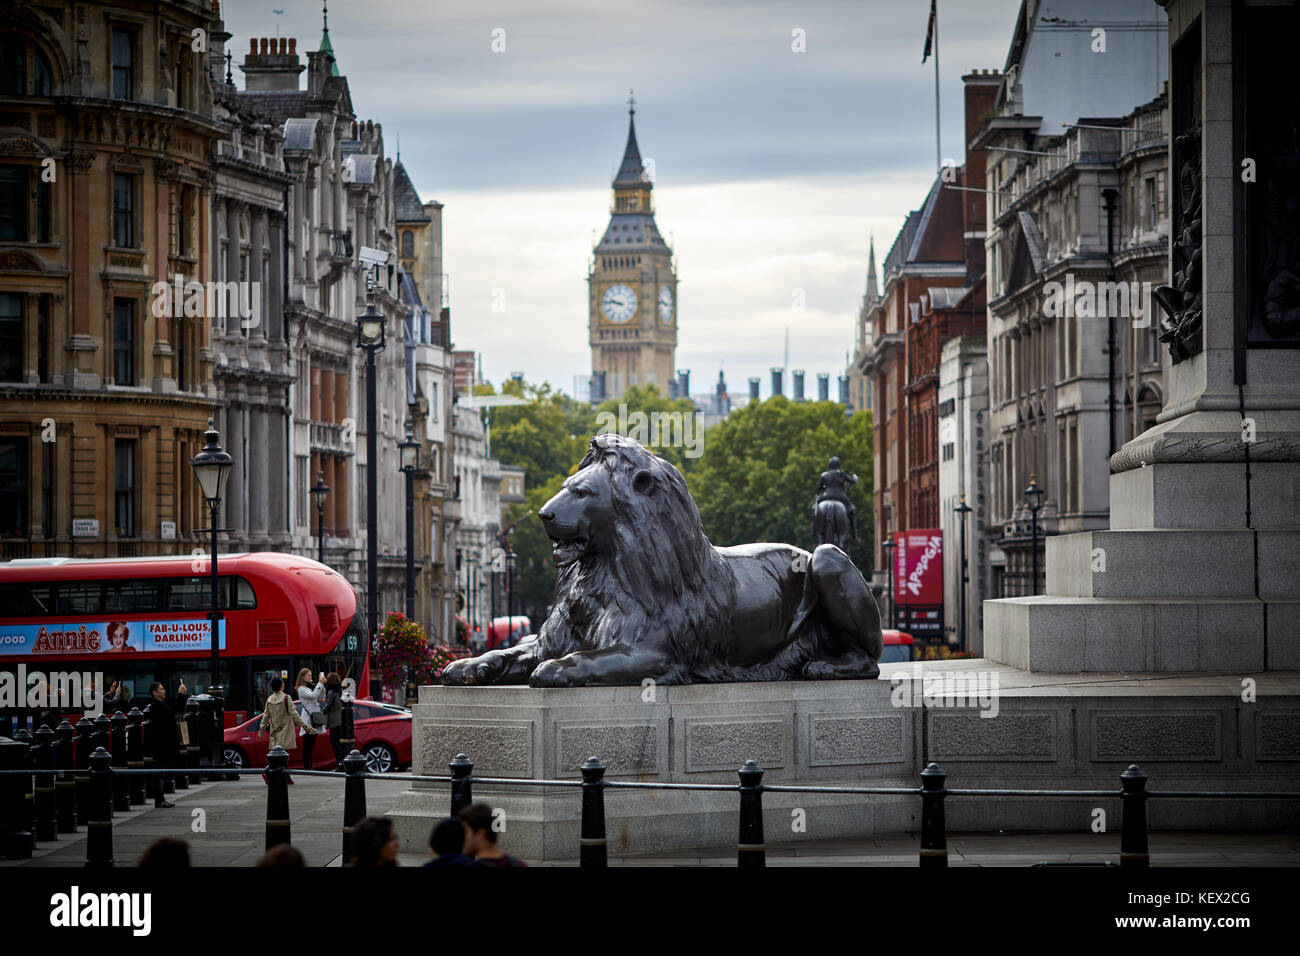 Les lions de Trafalgar Square Landmark City of westminster encadrée par l'horloge de Big Ben à Londres, la capitale de l'Angleterre Banque D'Images